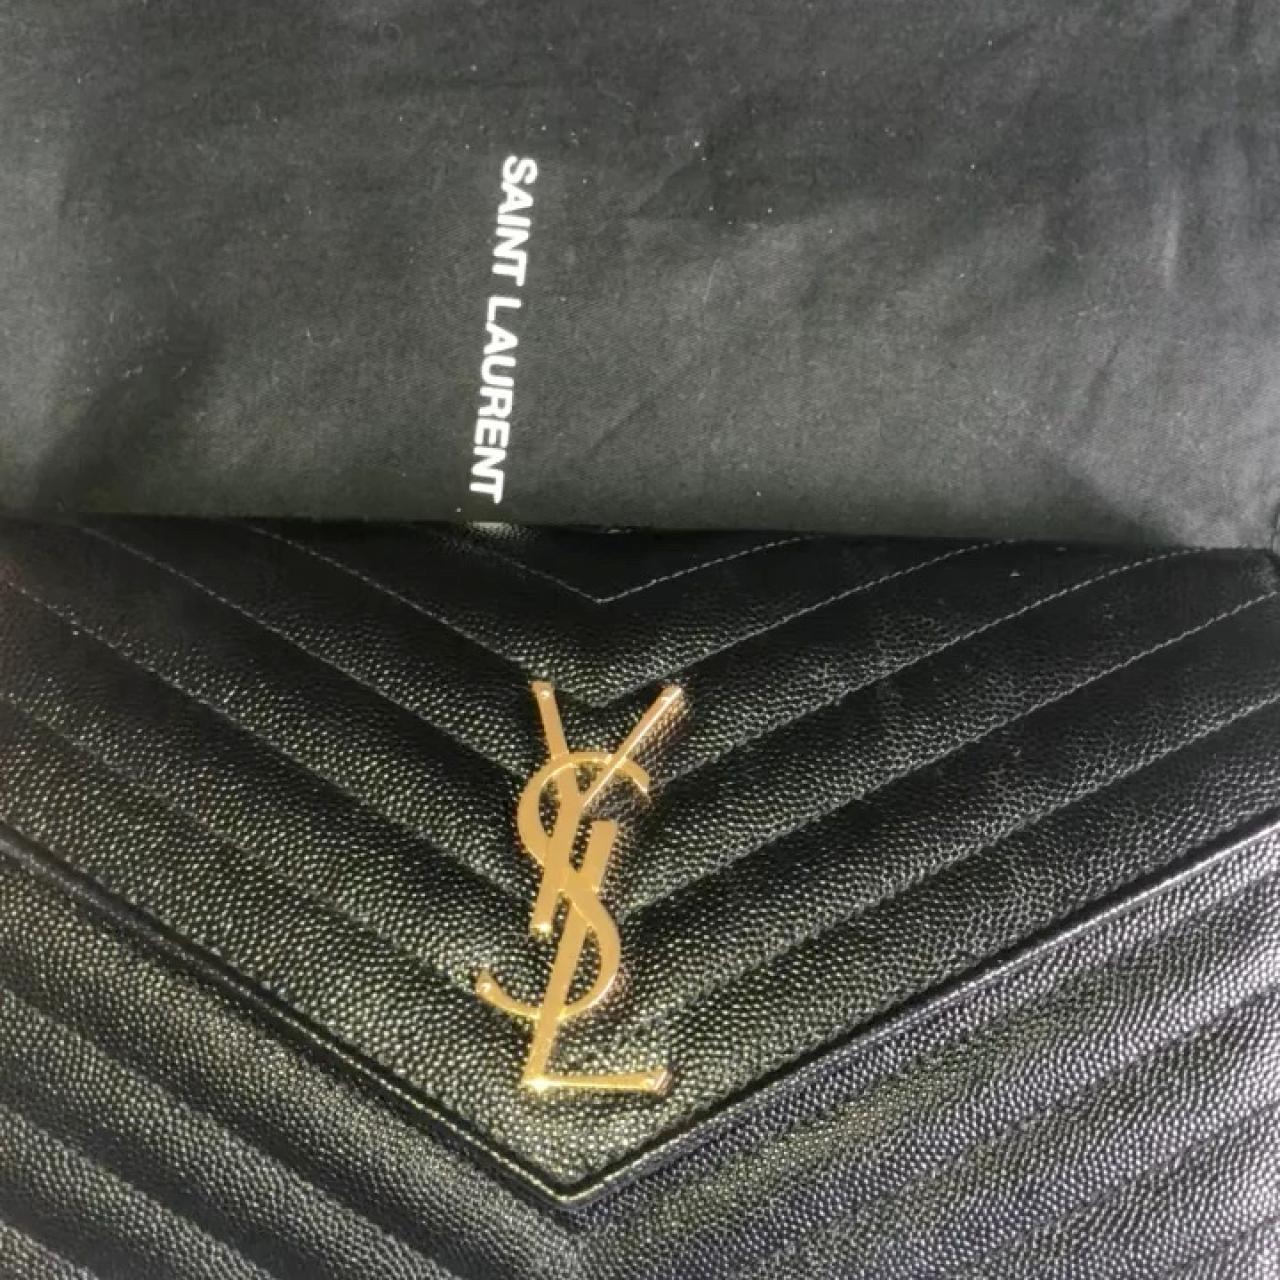 Authentic YSL Saint Laurent Wallet on Chain bag - Depop